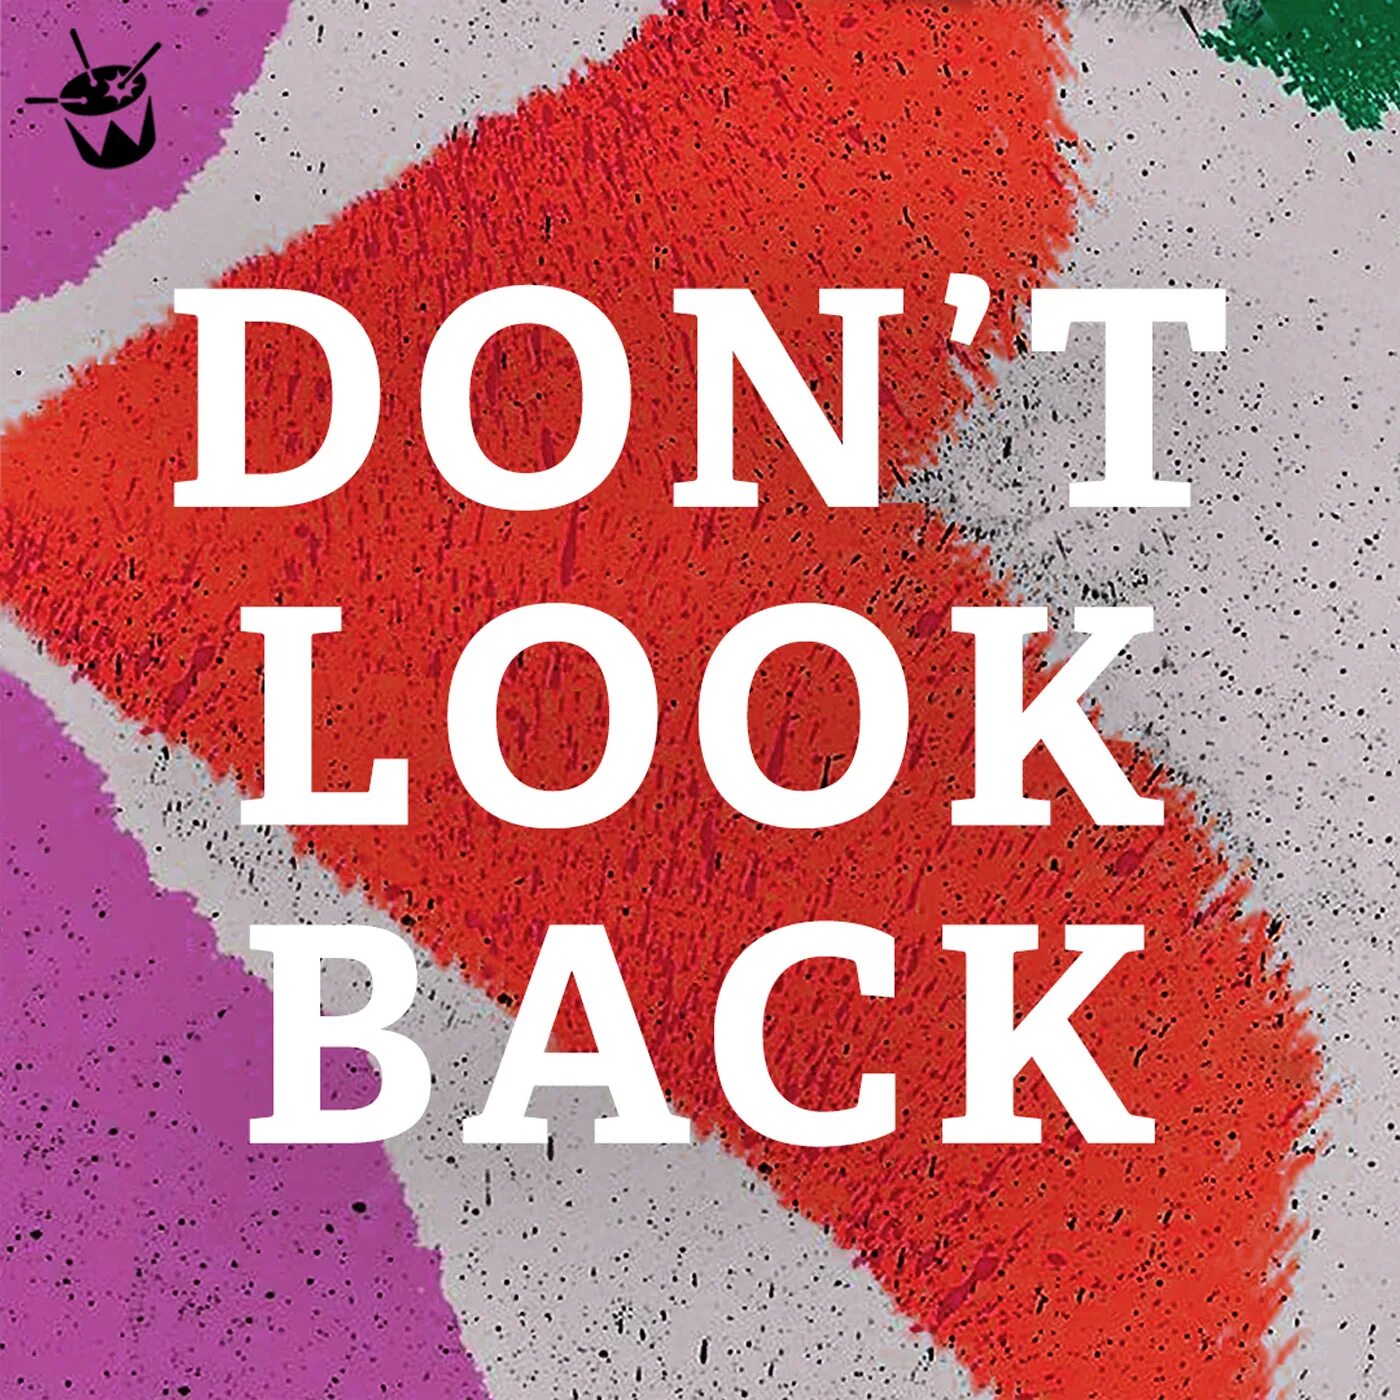 Dont back. Don t look. Don t look back. Don't look back картинка. Ава don't look back.